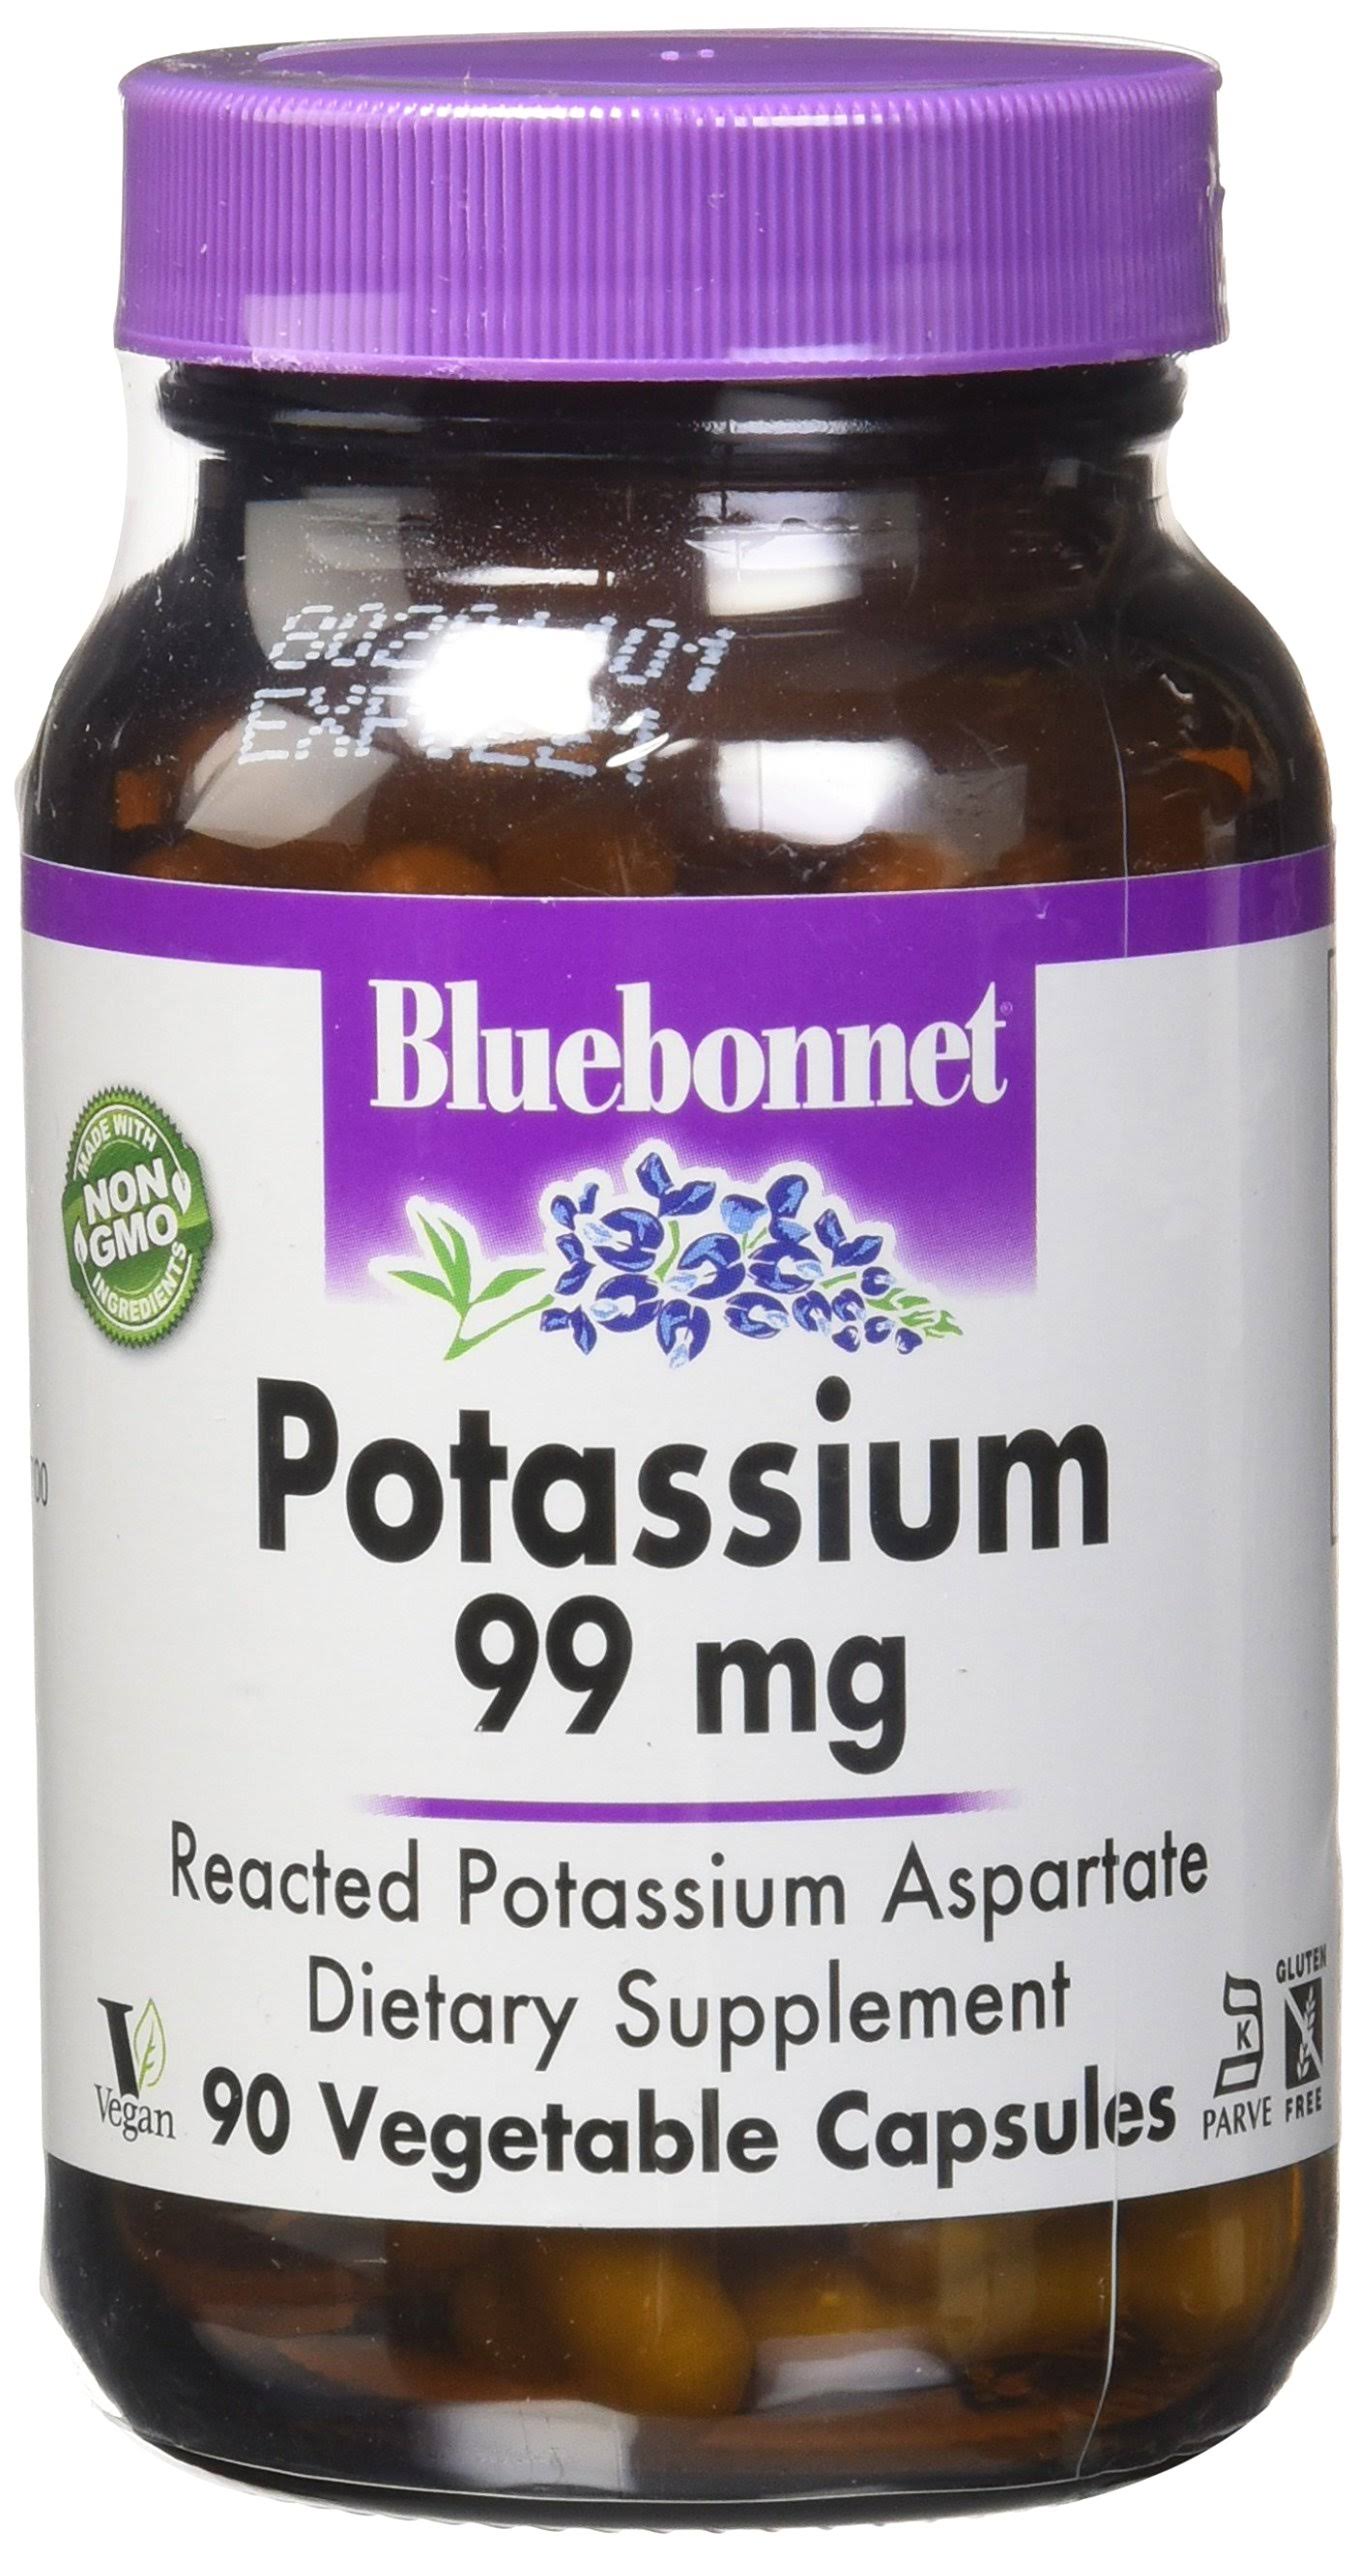 Bluebonnet Potassium Dietary Supplement - 90 Capsules